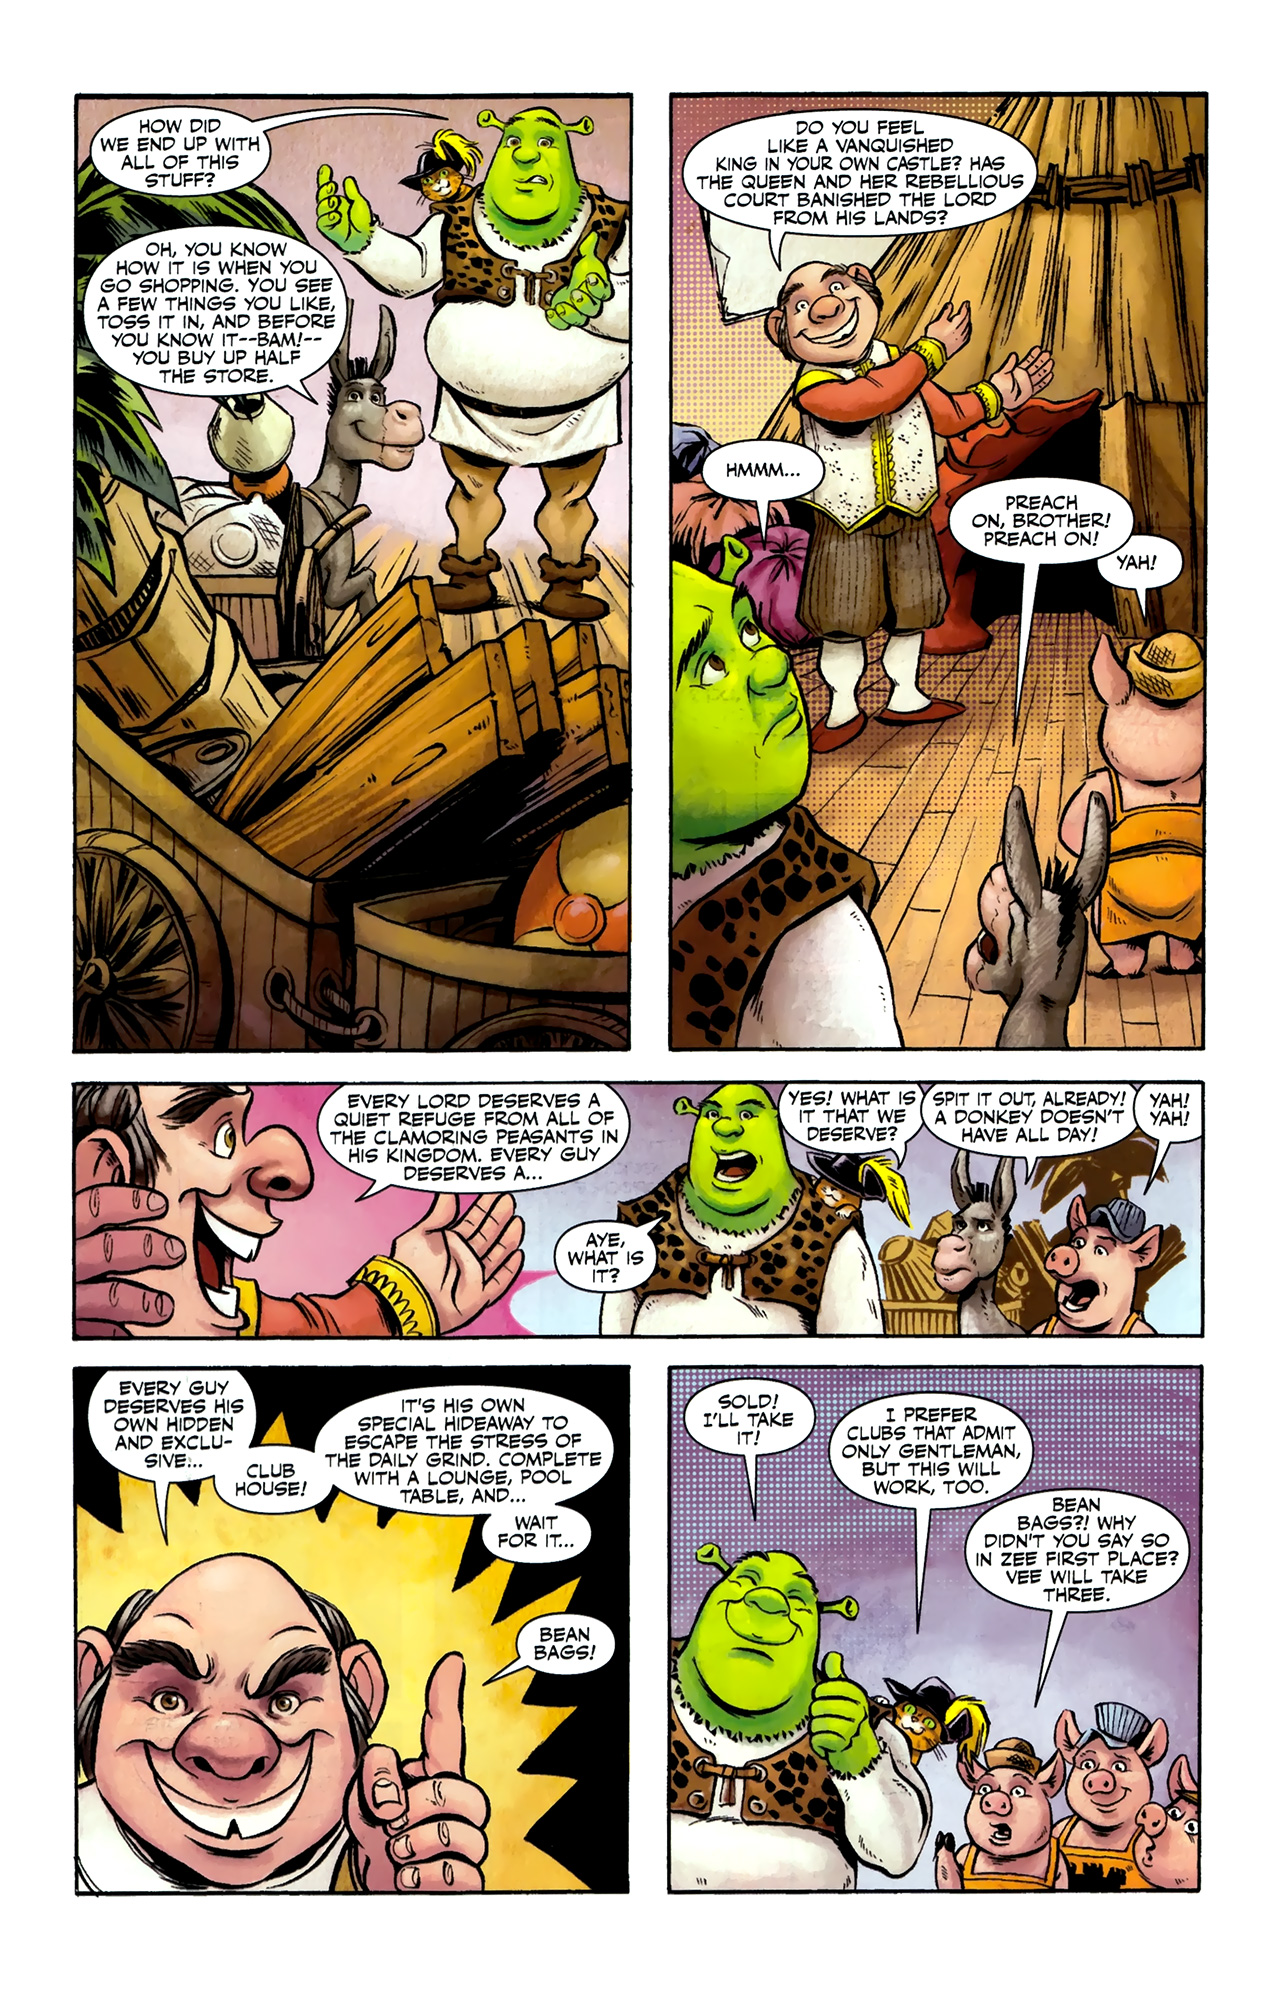 Read Online Shrek 2010 Comic Issue 4